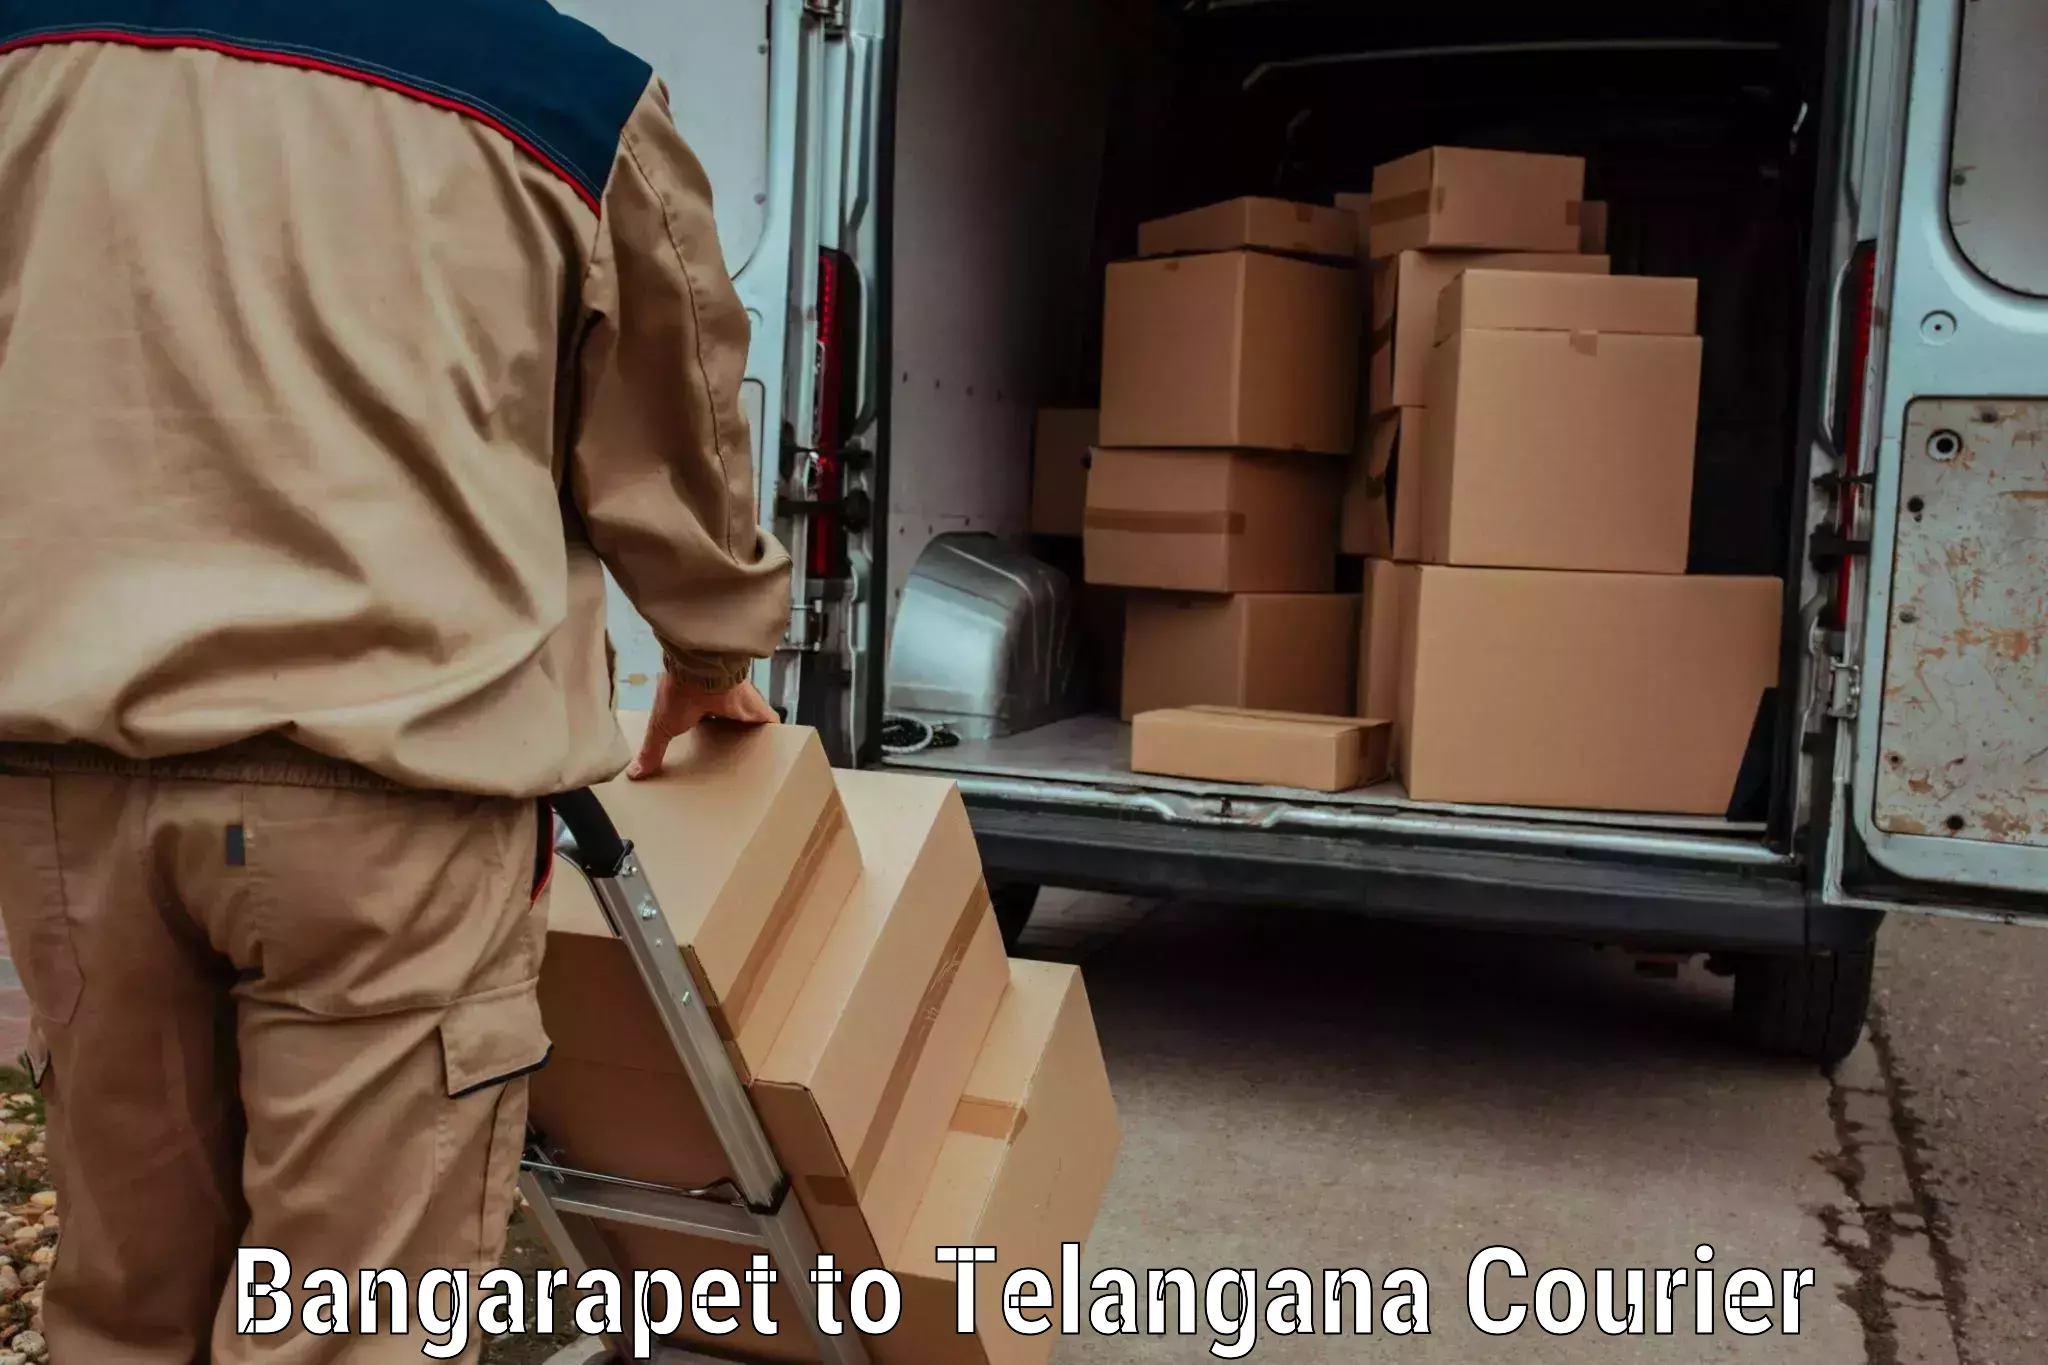 Digital courier platforms Bangarapet to Karimnagar